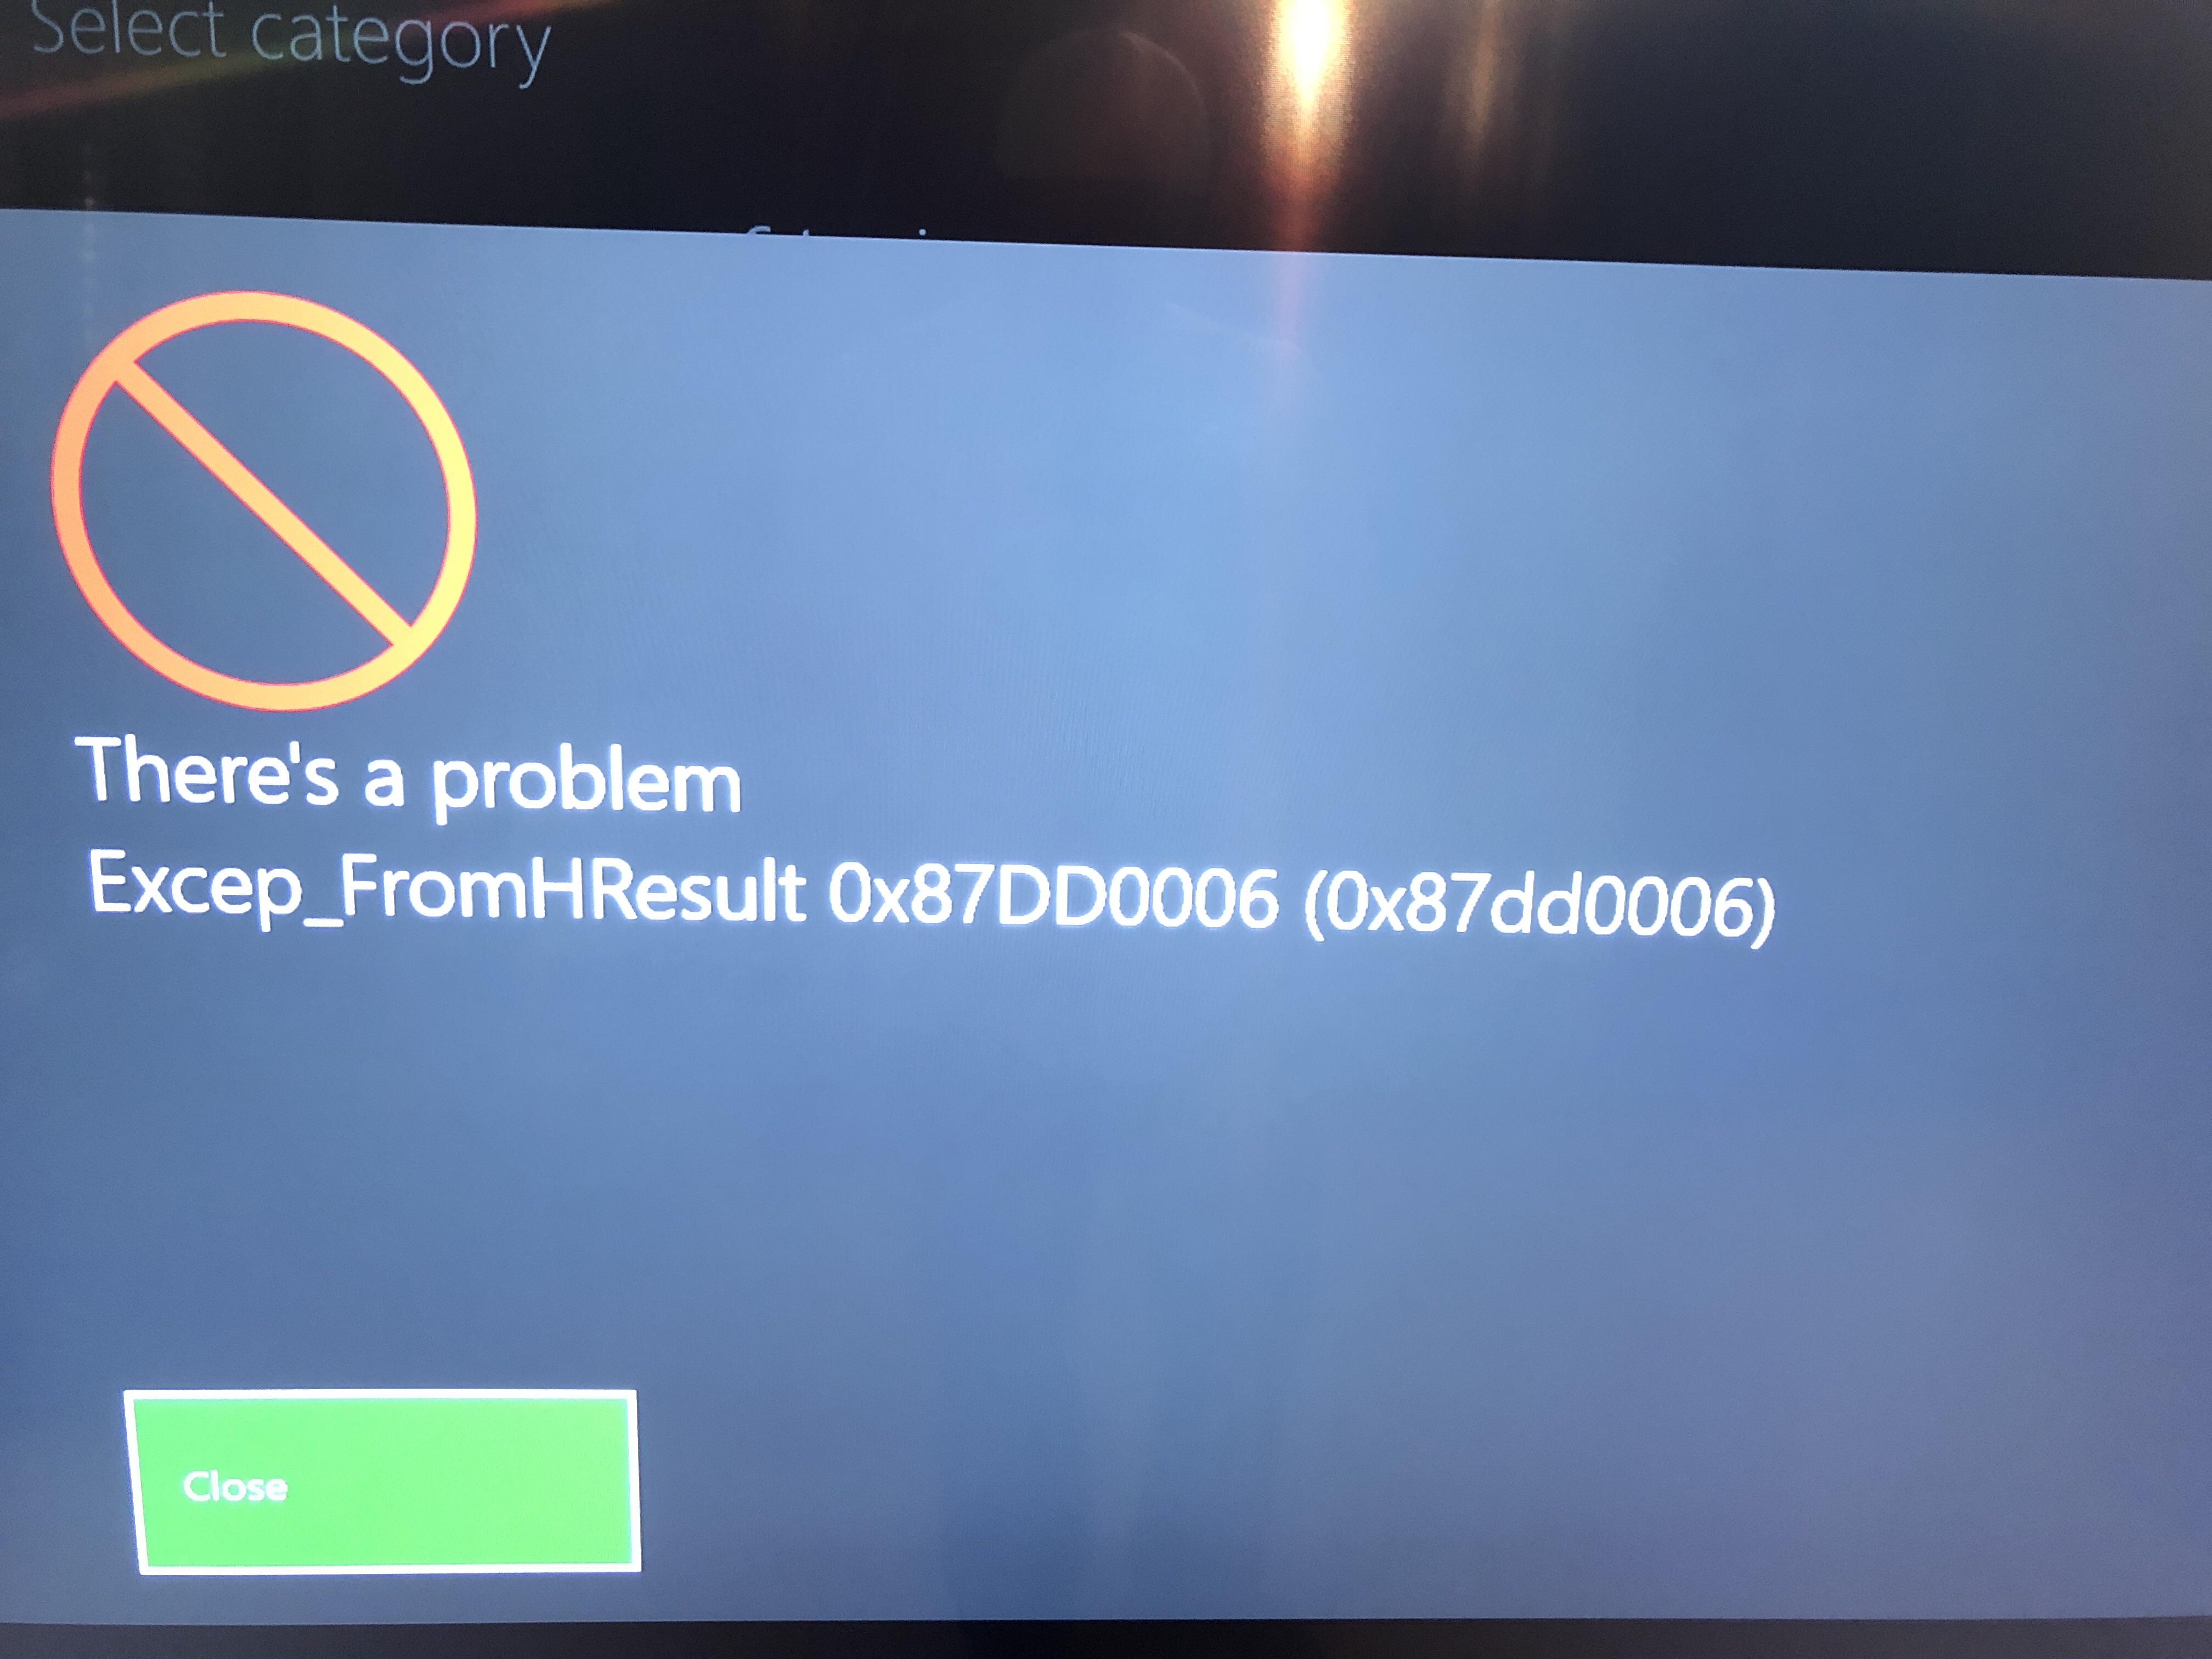 Xbox 0x87dd0006 Sign-in Error